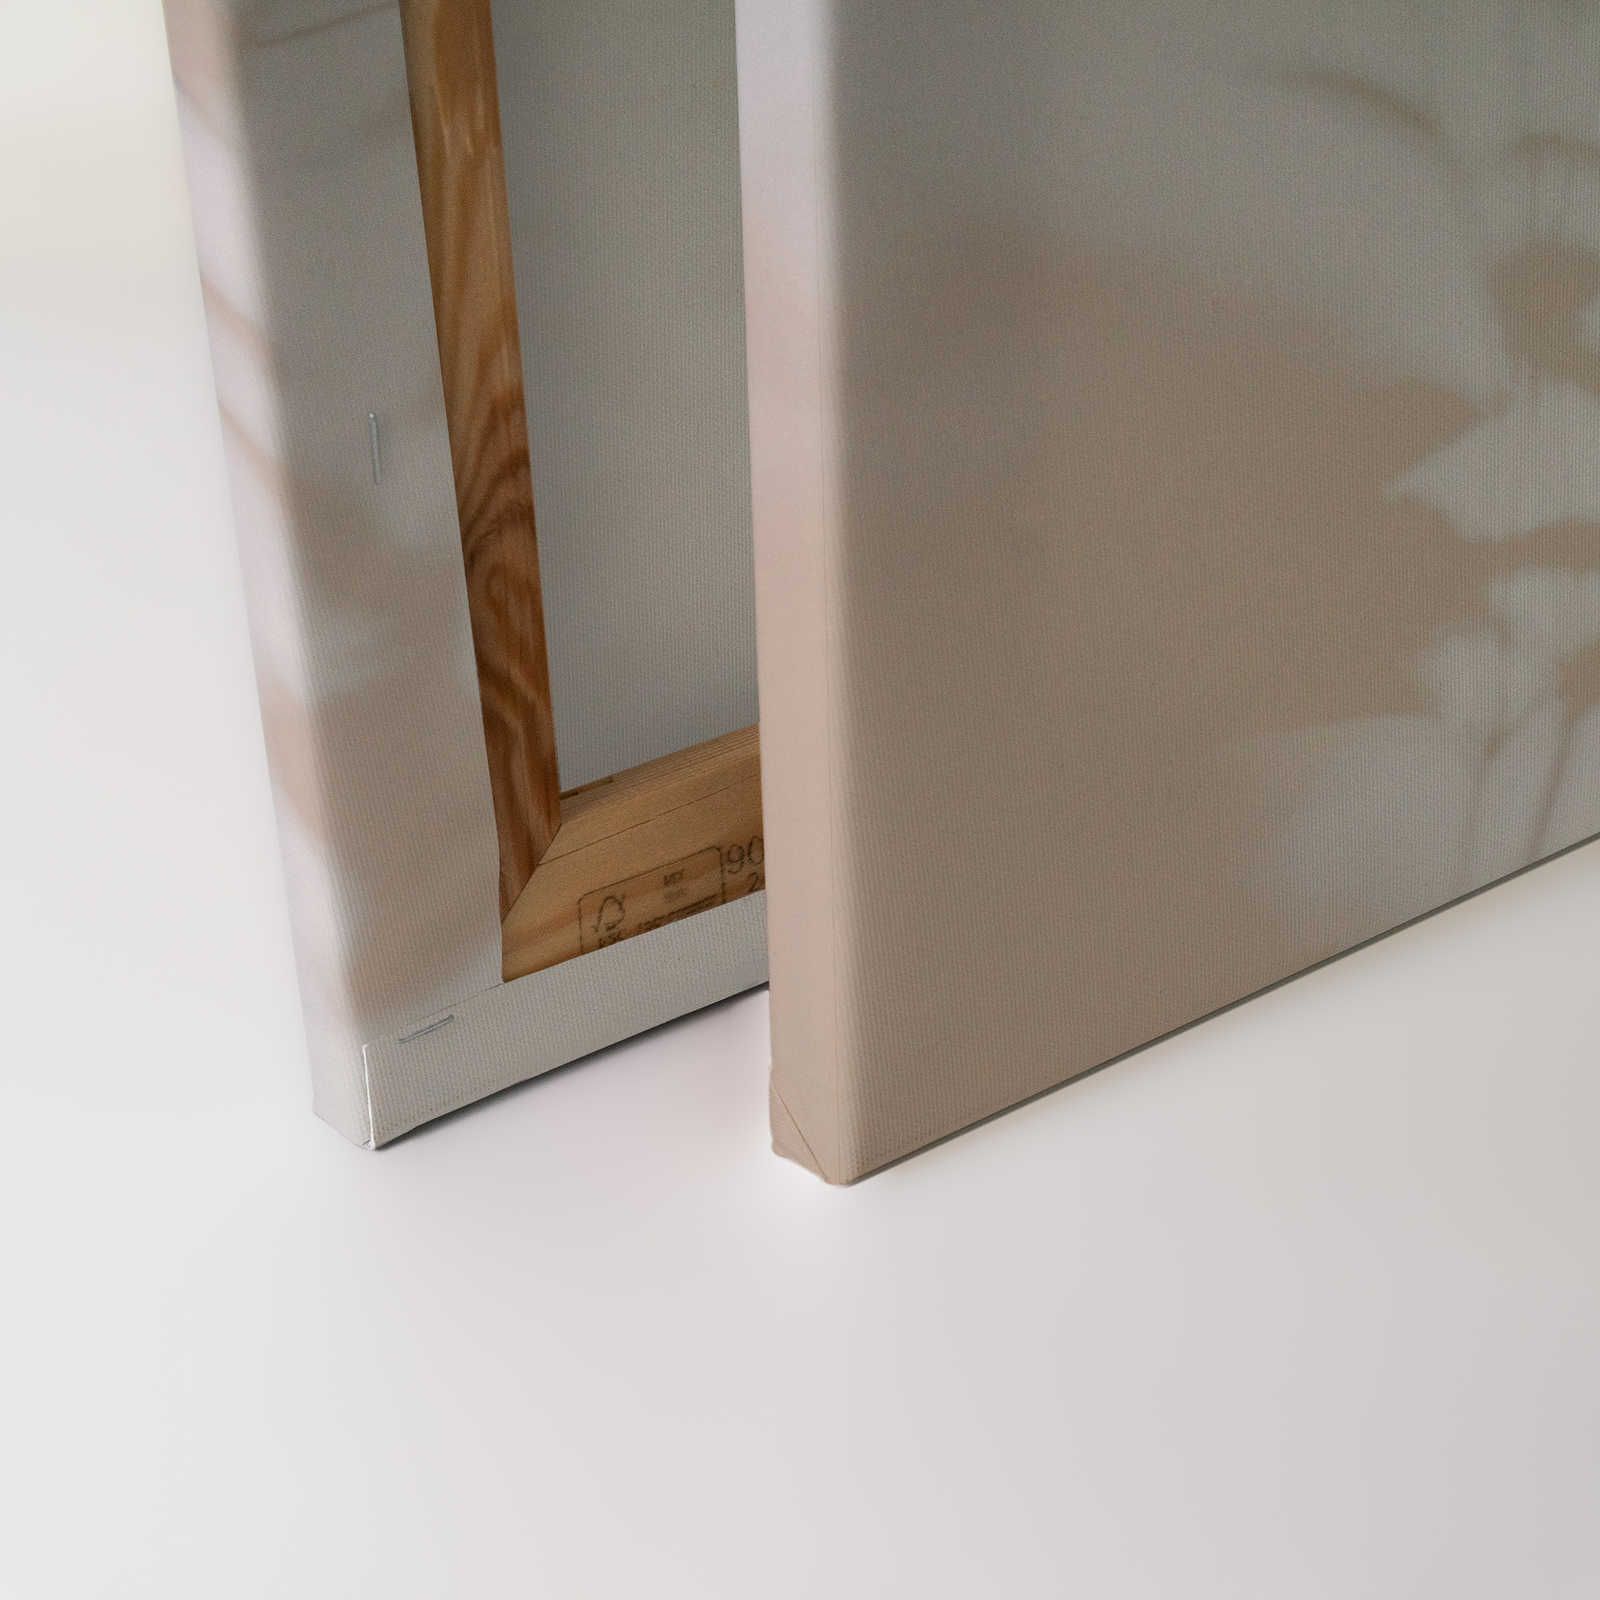             Shadow Room 1 - Naturel toile Beige & Blanc, design délavé - 0,90 m x 0,60 m
        